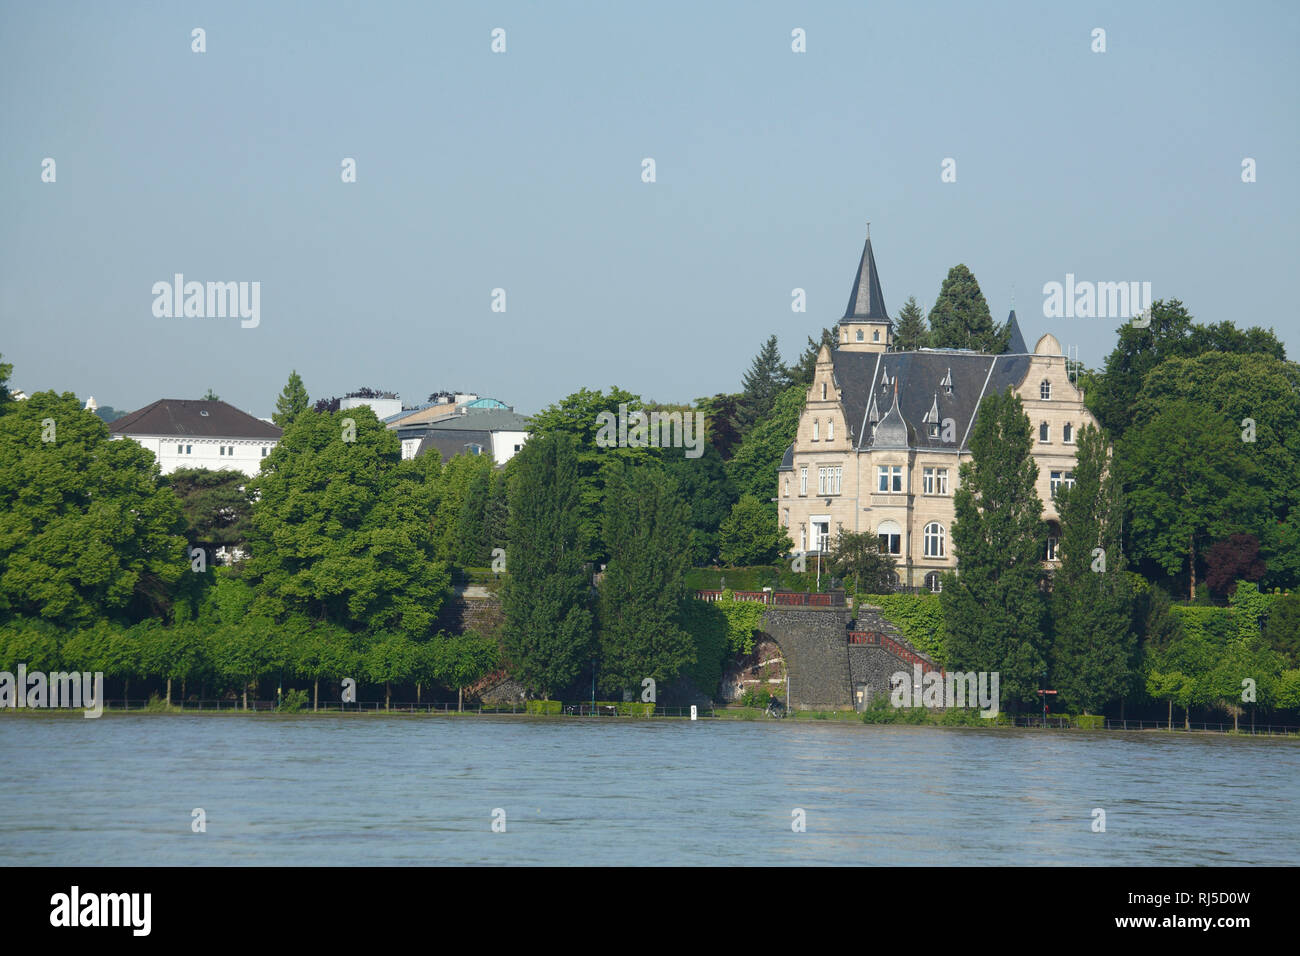 Villen, Rheinufer, Rhein, Bonn, Nordrhein-Westfalen, Deutschland, Europa Stock Photo